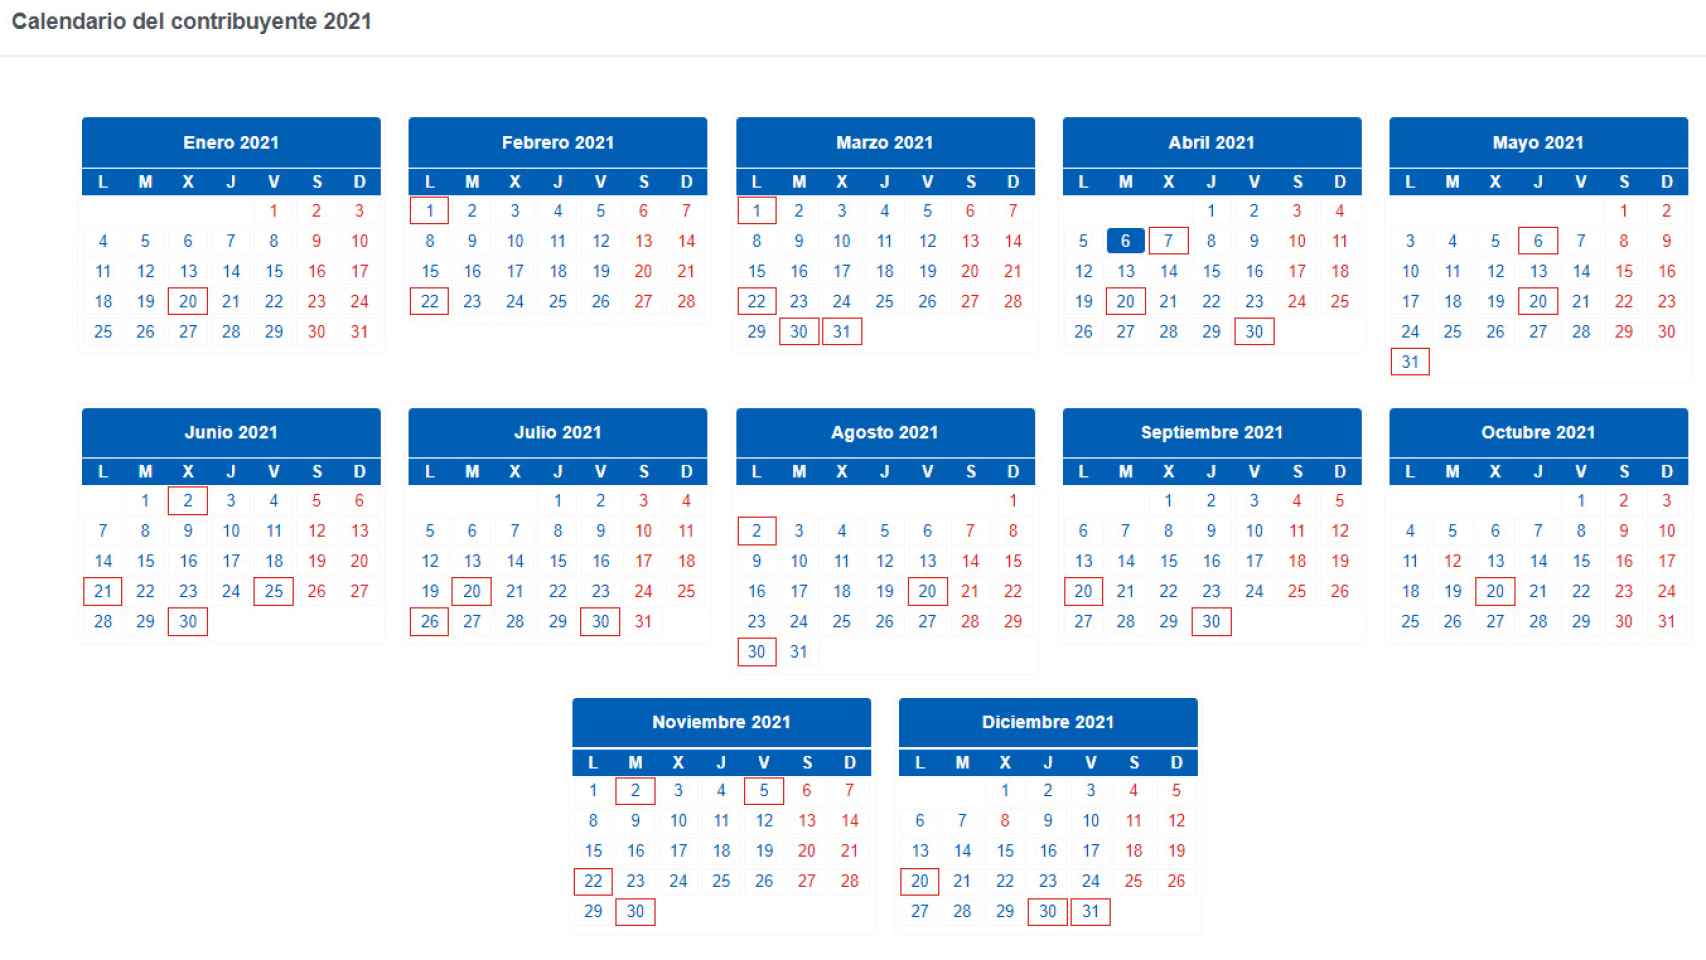 Calendario del contribuyente 2021